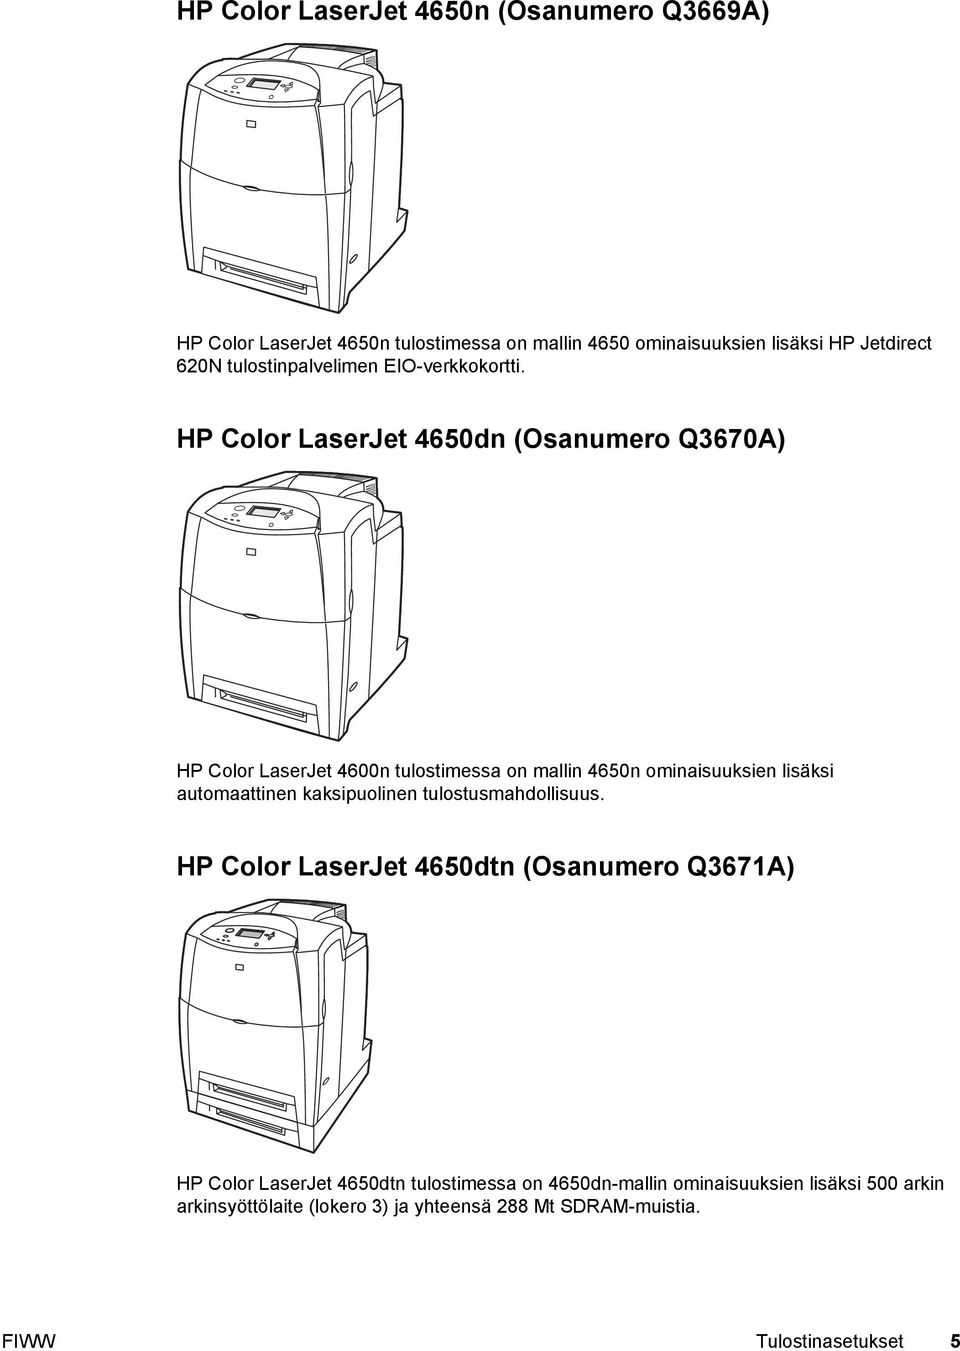 HP Color LaserJet 4650dn (Osanumero Q3670A) HP Color LaserJet 4600n tulostimessa on mallin 4650n ominaisuuksien lisäksi automaattinen